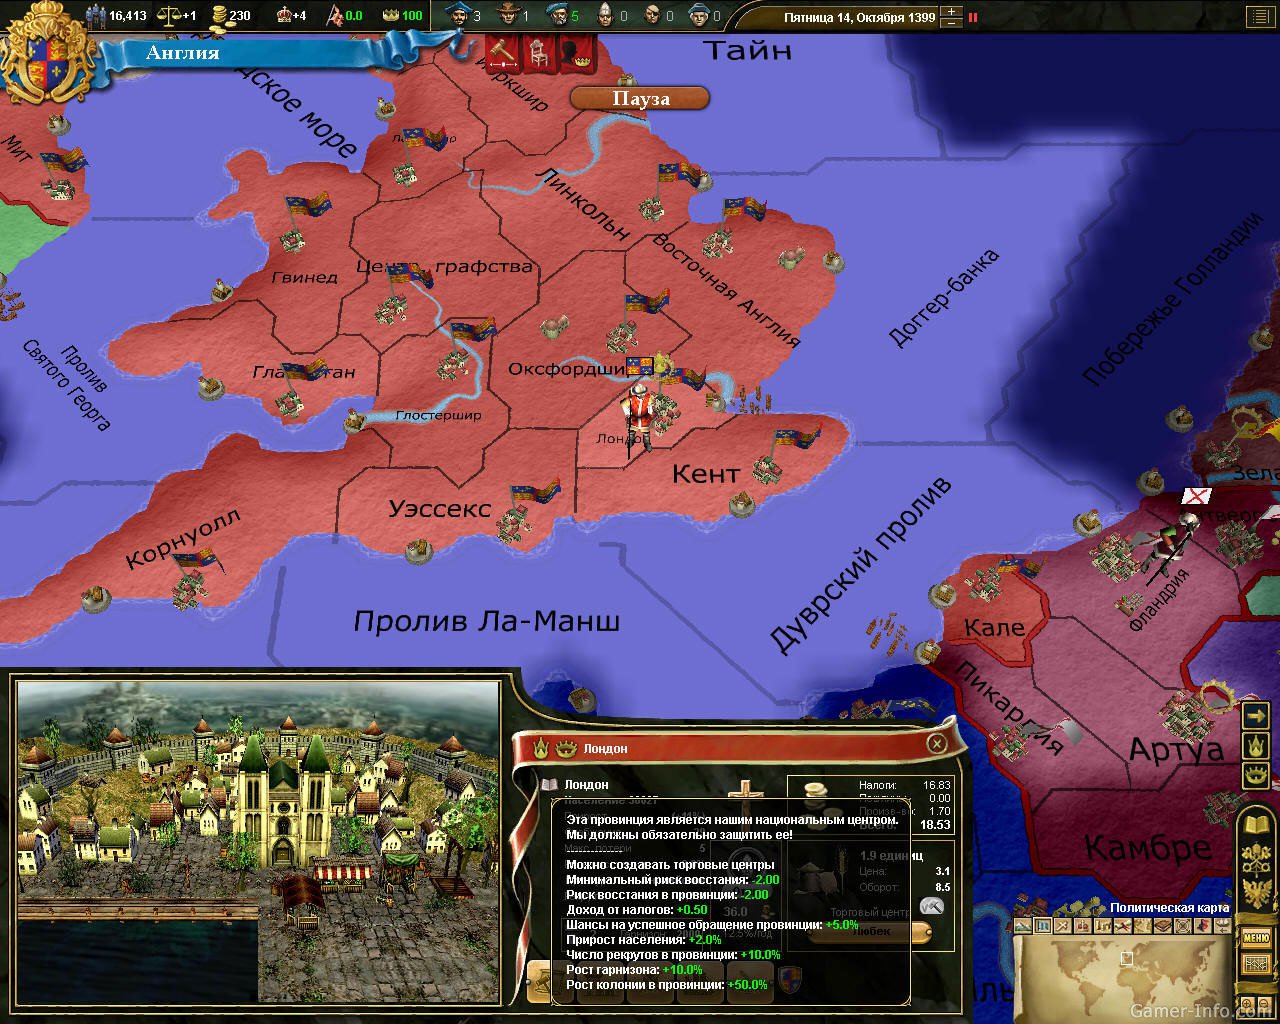 Europe 3 0.44 9. Европа 3: Великие династии. Европа 3. Великие династии (PC/Rus). Европа Универсалис 3. Европа 3 игра.